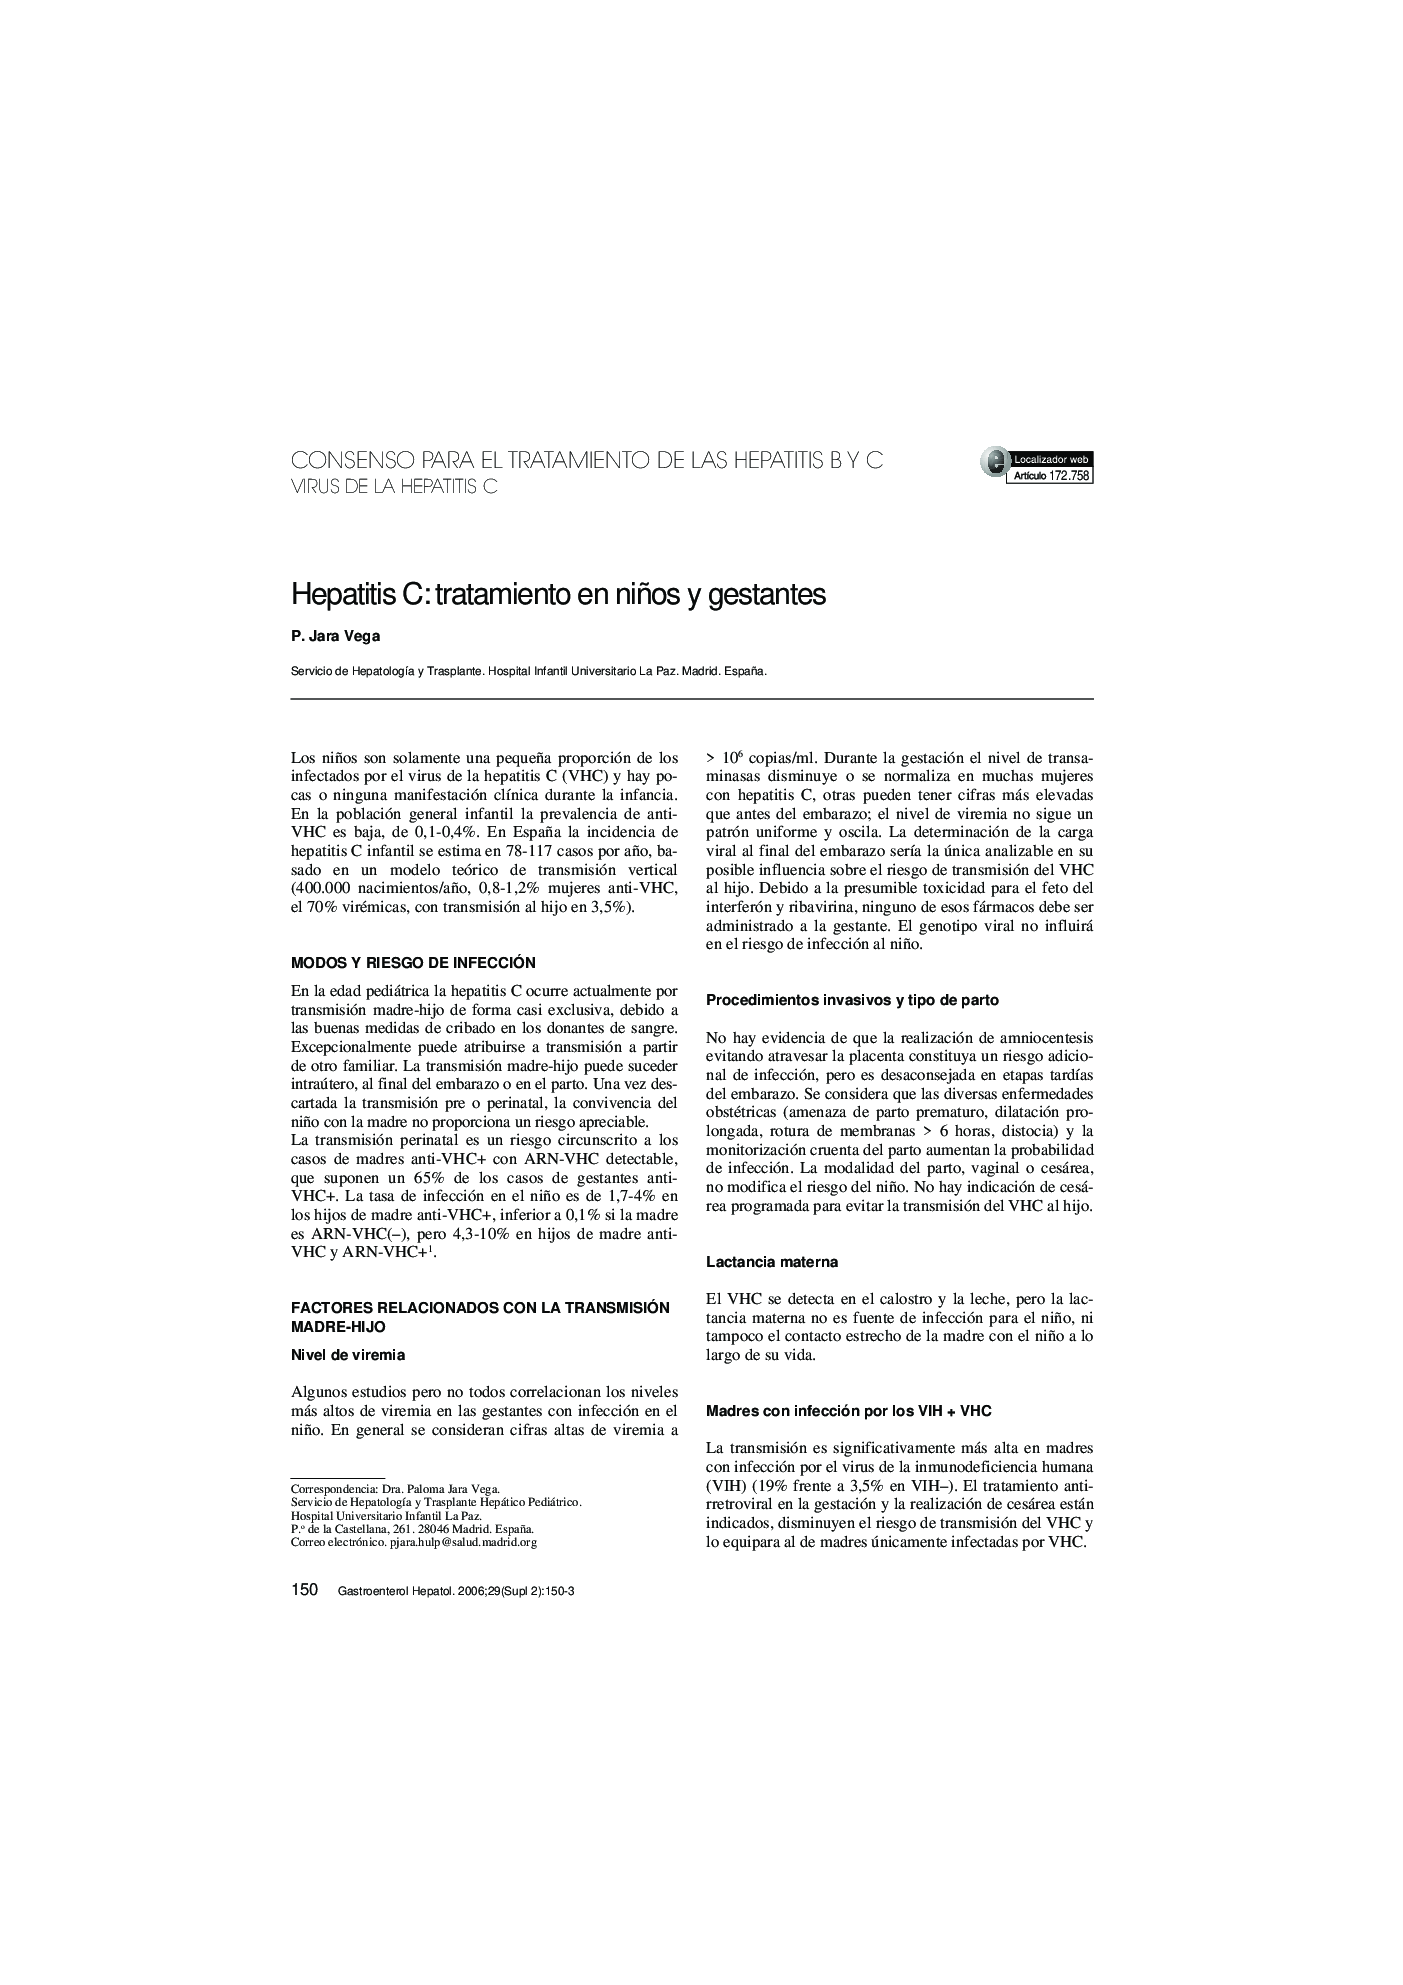 Hepatitis C: tratamiento en niños y gestantes